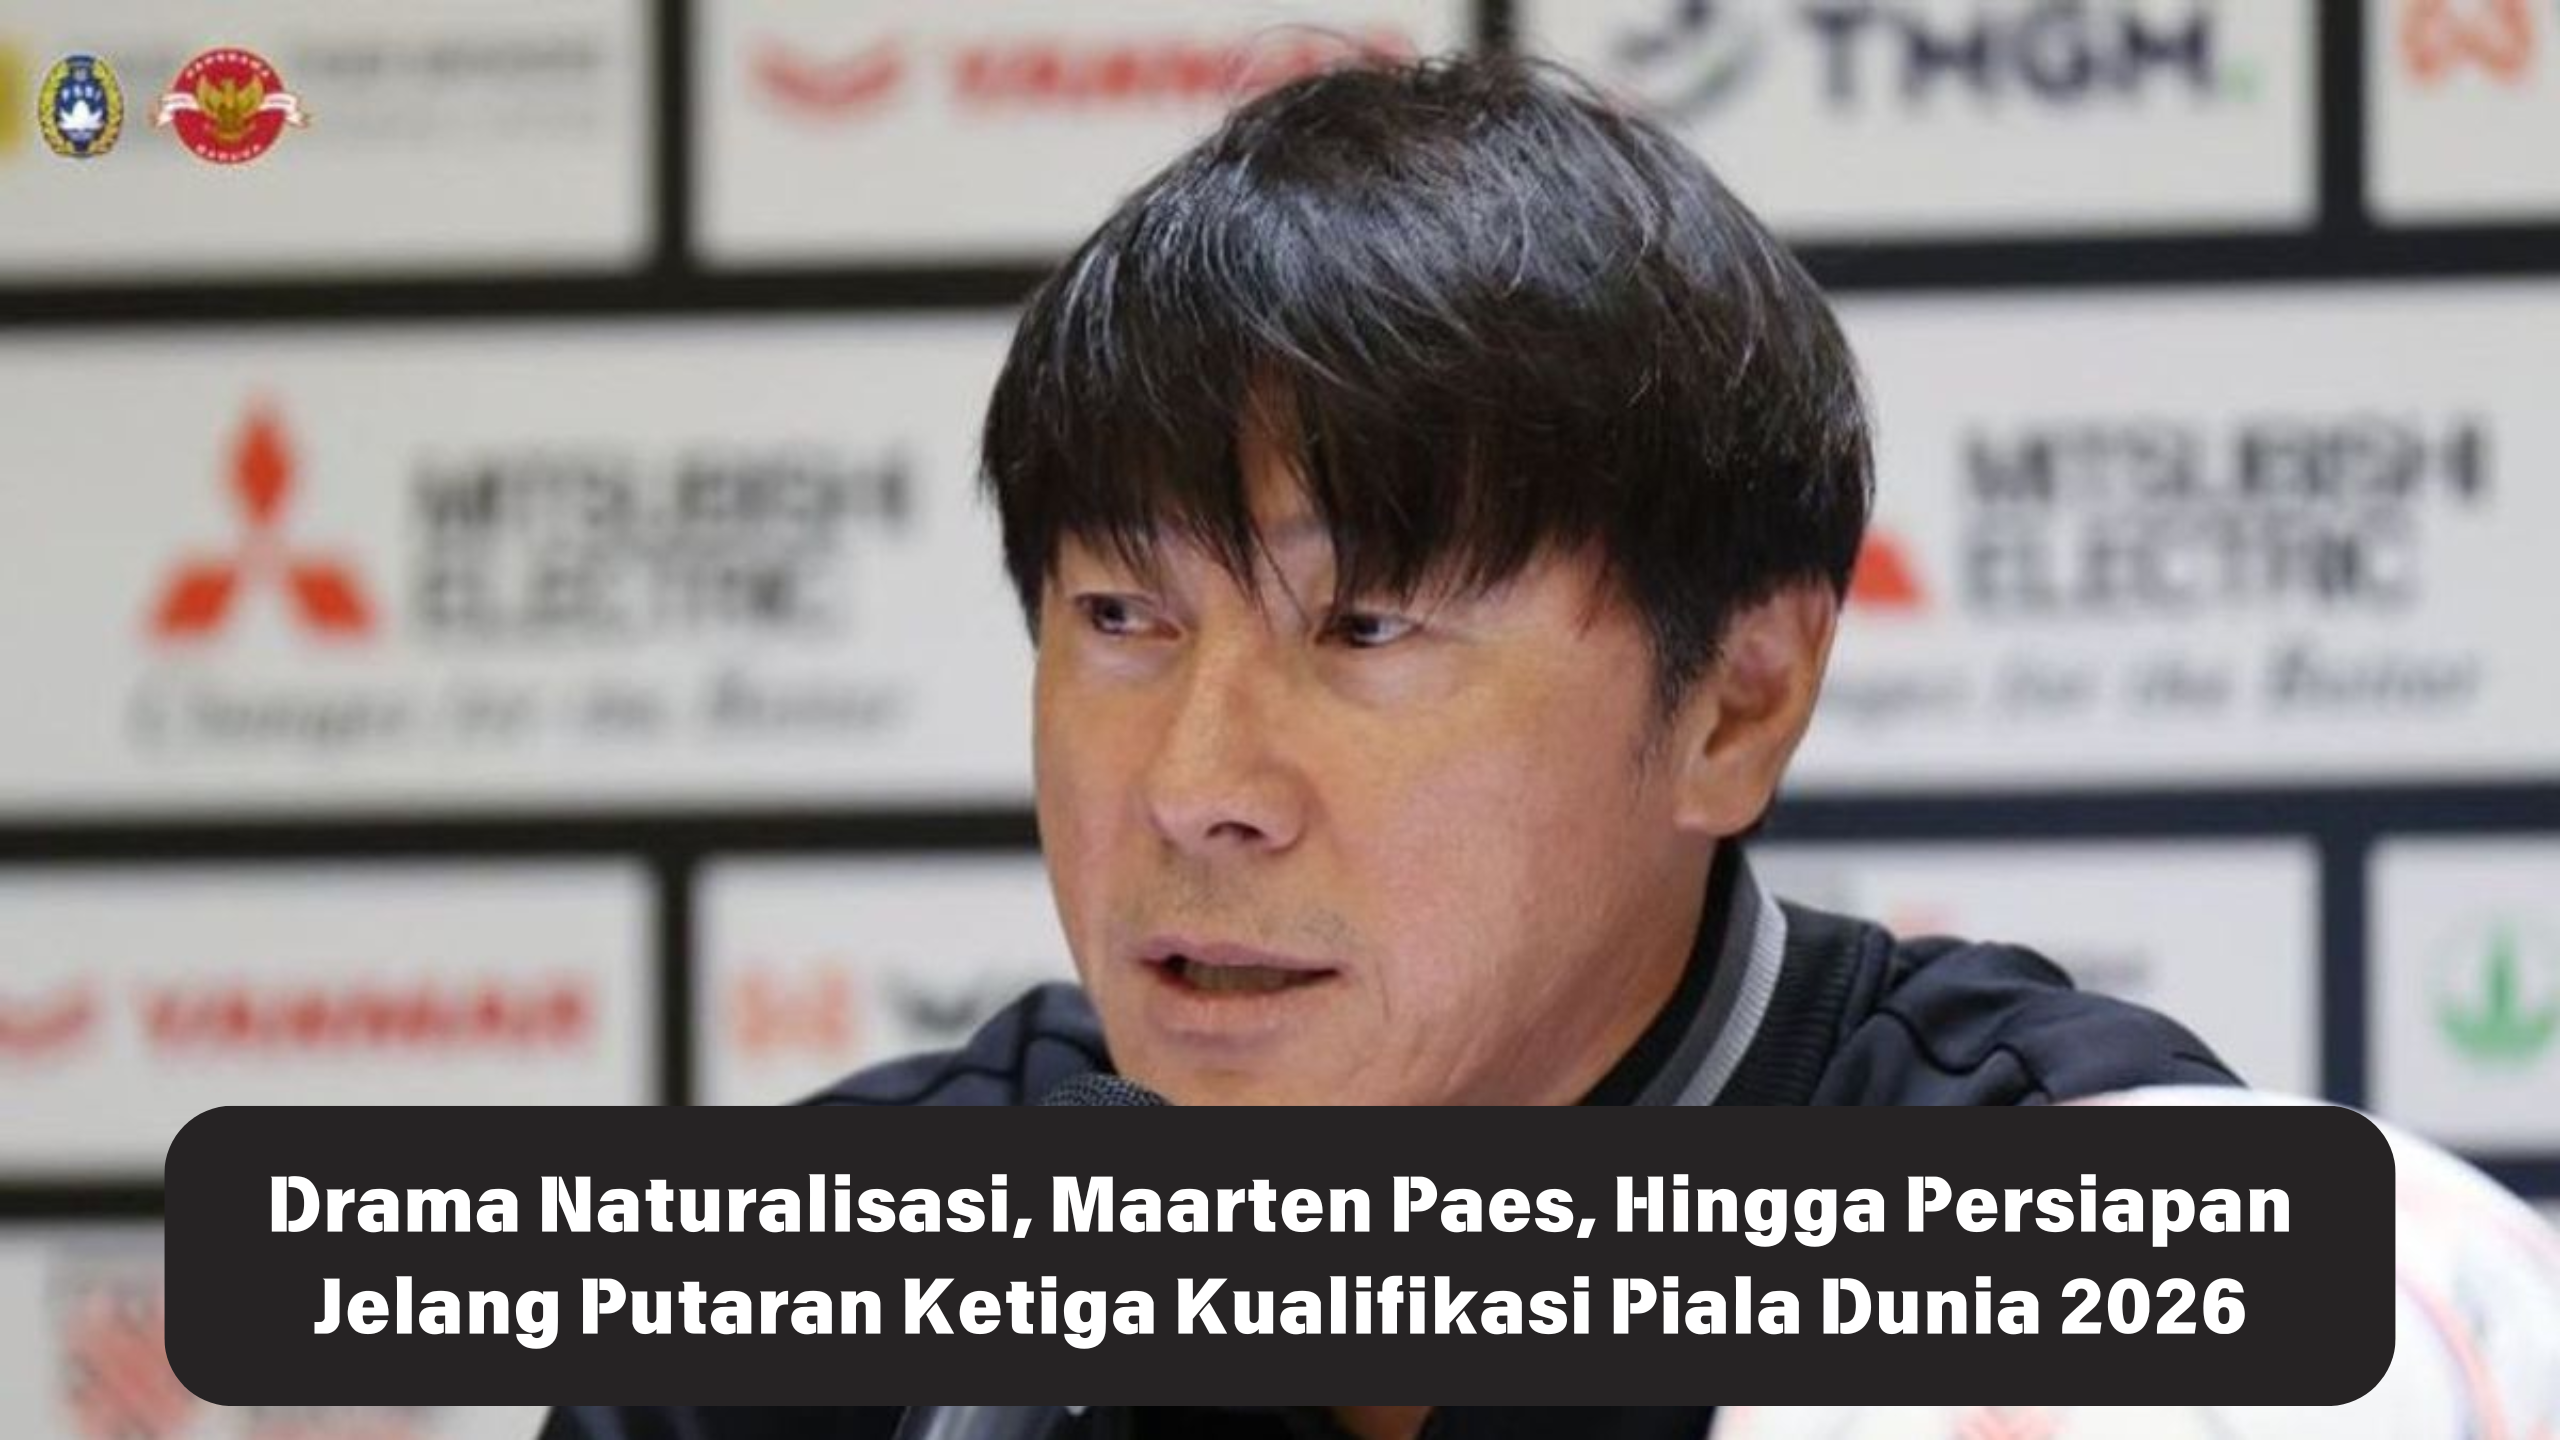 Totalitas Tanpa Batas! Ternyata Ini Persiapan Shin Tae-Yong Jelang Putaran Ketiga Kualifikasi Piala Dunia 2026